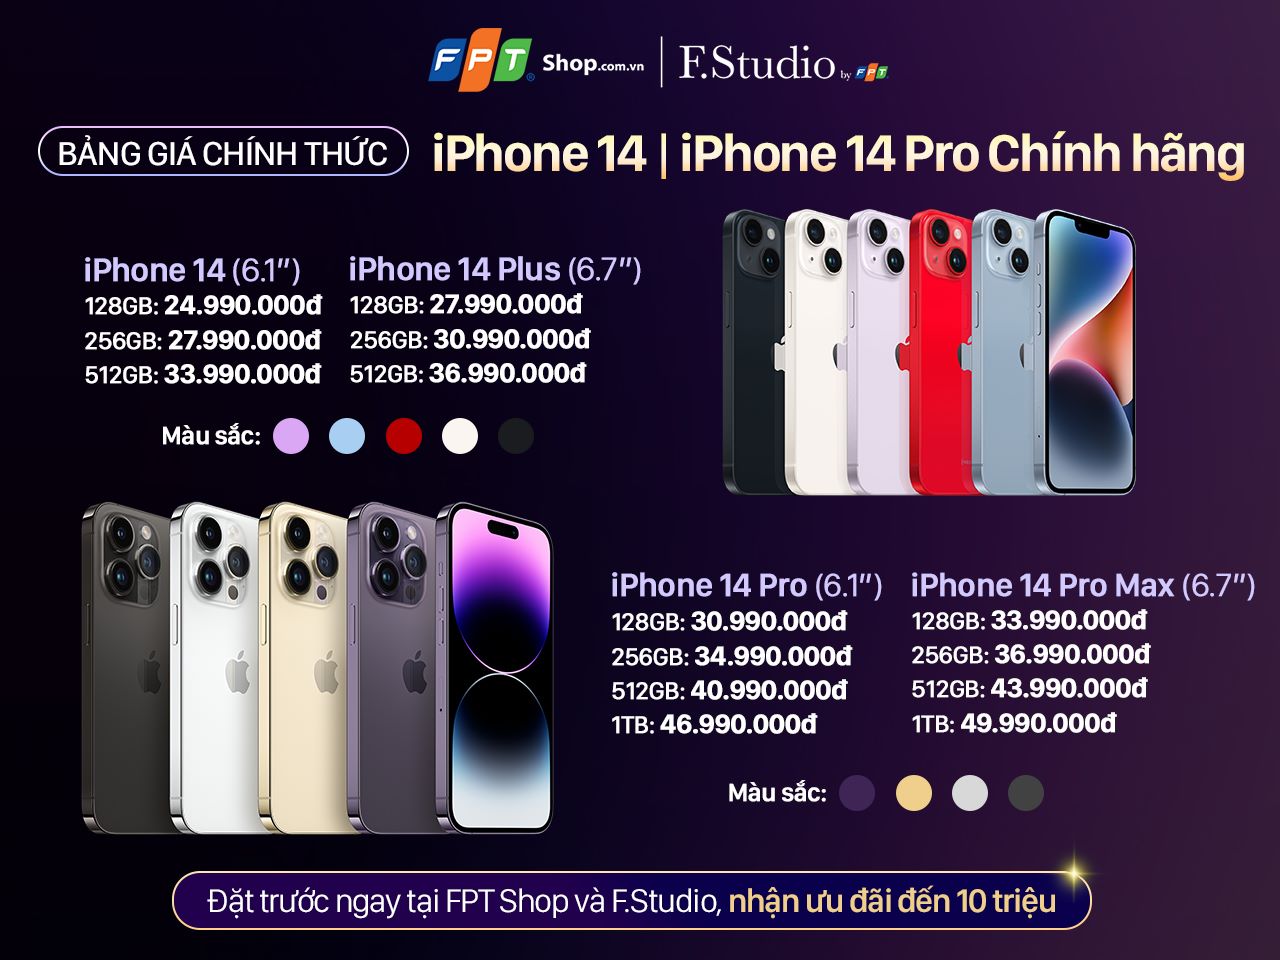 FPT Shop và F.Studio by FPT ưu đãi đến 10 triệu, nhân đôi bảo hành khi đặt trước iPhone 14 Series